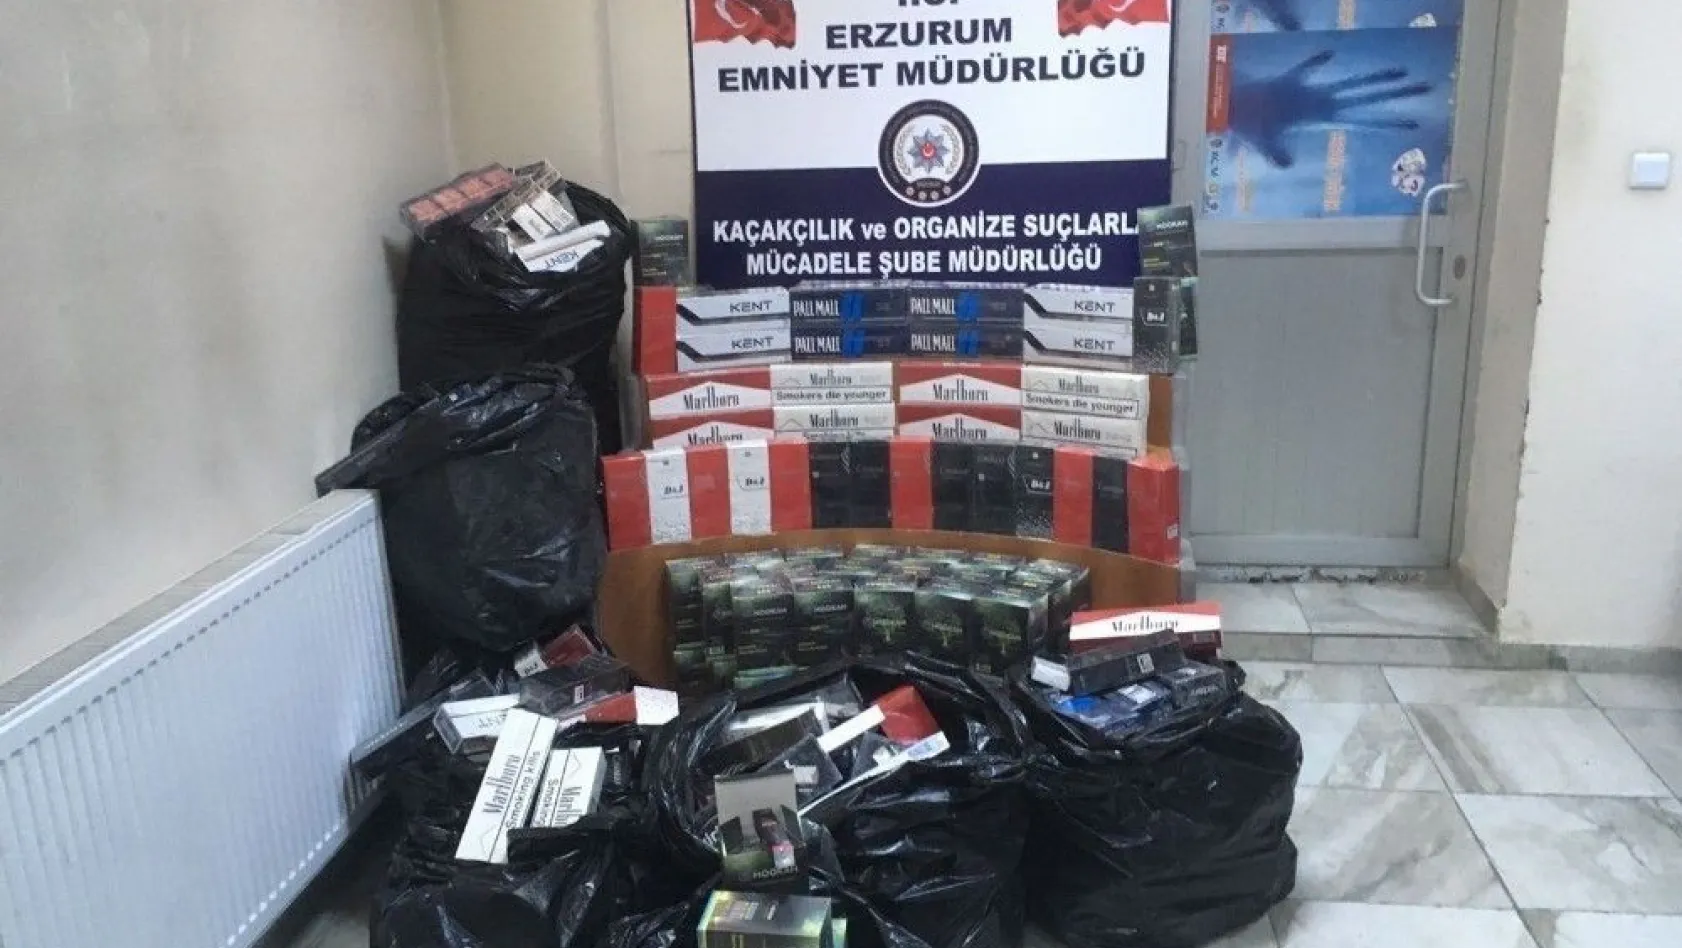 Erzurum'da 39 bin 67 paket kaçak sigara ele geçirildi
